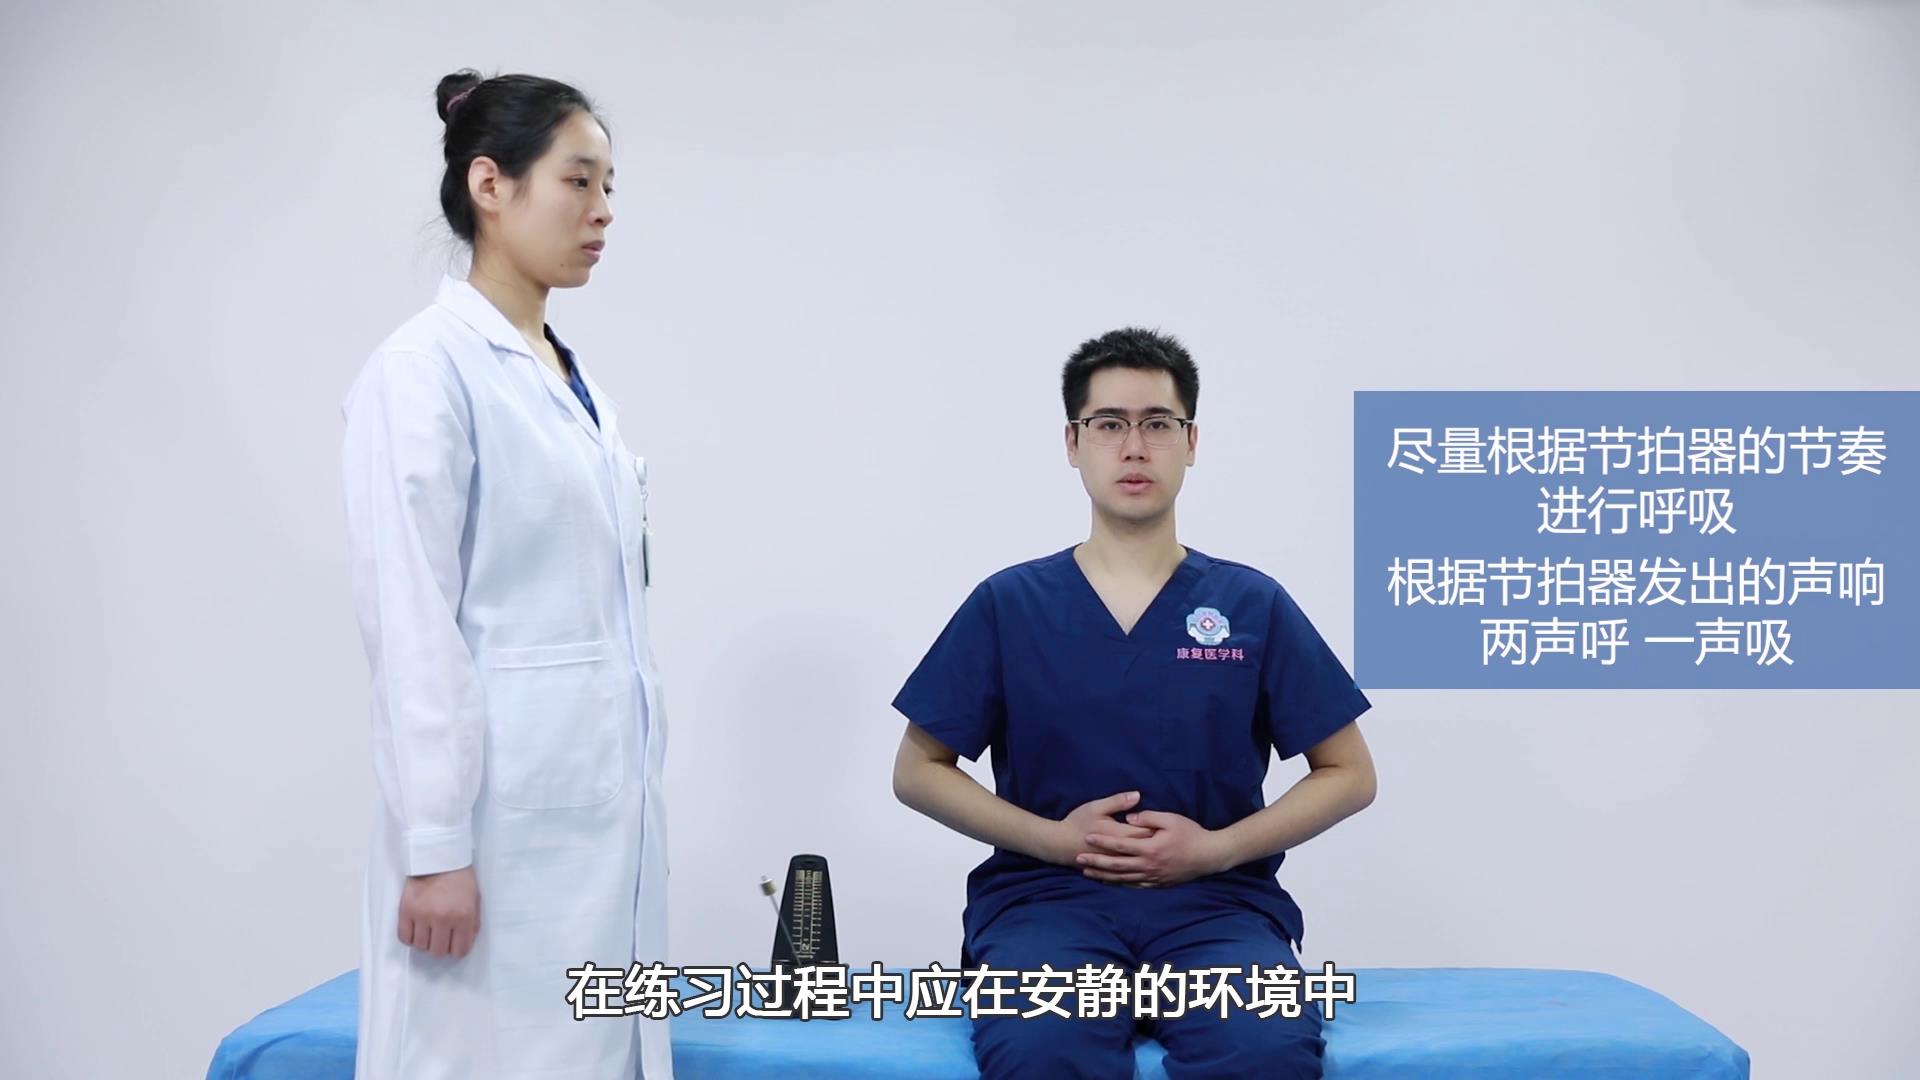 【康复训练短视频①】新冠肺炎患者出院后呼吸训练法